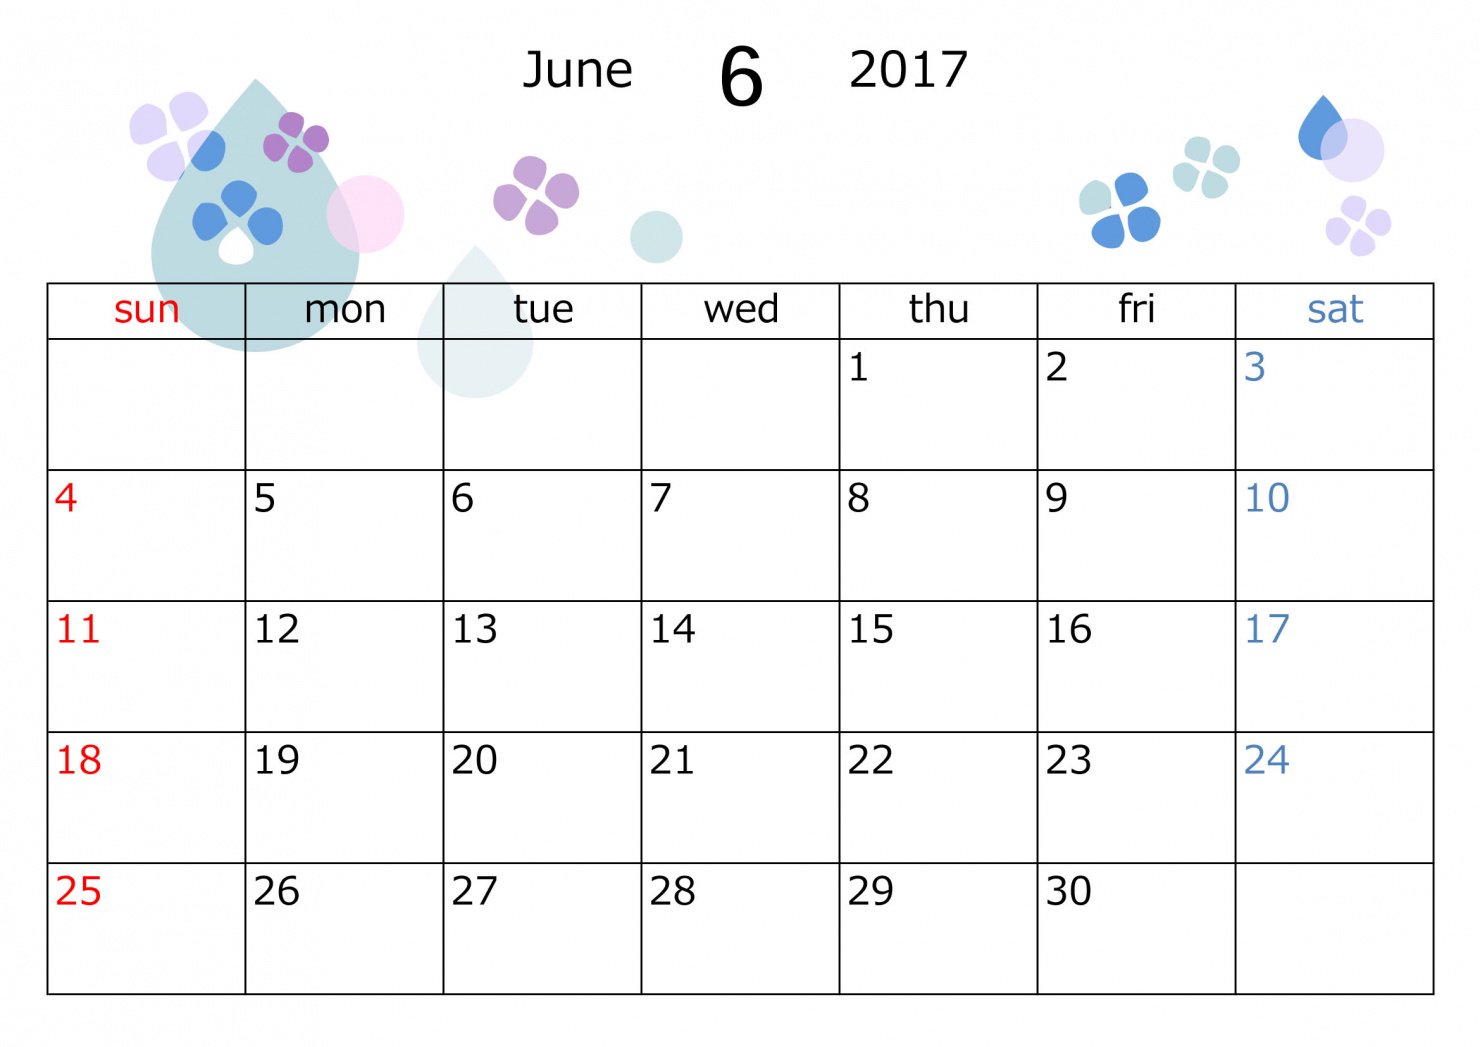 Twitter 上的 イラストボックス T Co I3w1jjfrgn 17年度のカレンダー素材です ａ4サイズで印刷できる横型のタイプを作りました イラストボックス 6月 6月カレンダー 17年6月カレンダー カレンダー素材 印刷 無料イラスト イラスト無料